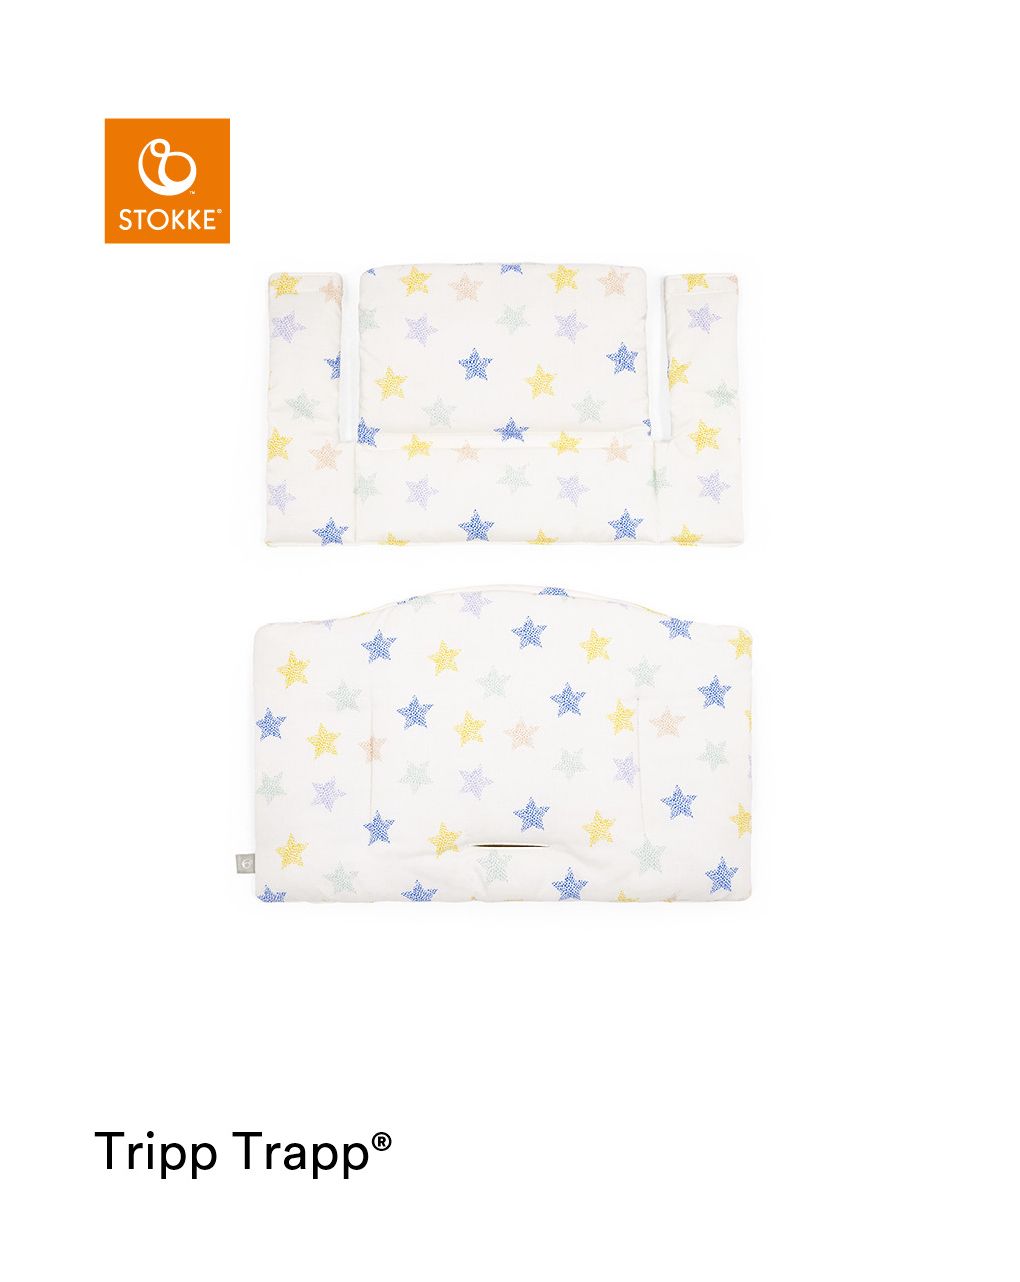 Tripp trapp® classic cushion stars multi ocs
cuscino per seggiolone, morbido e avvolgente per il tuo bambino - Stokke